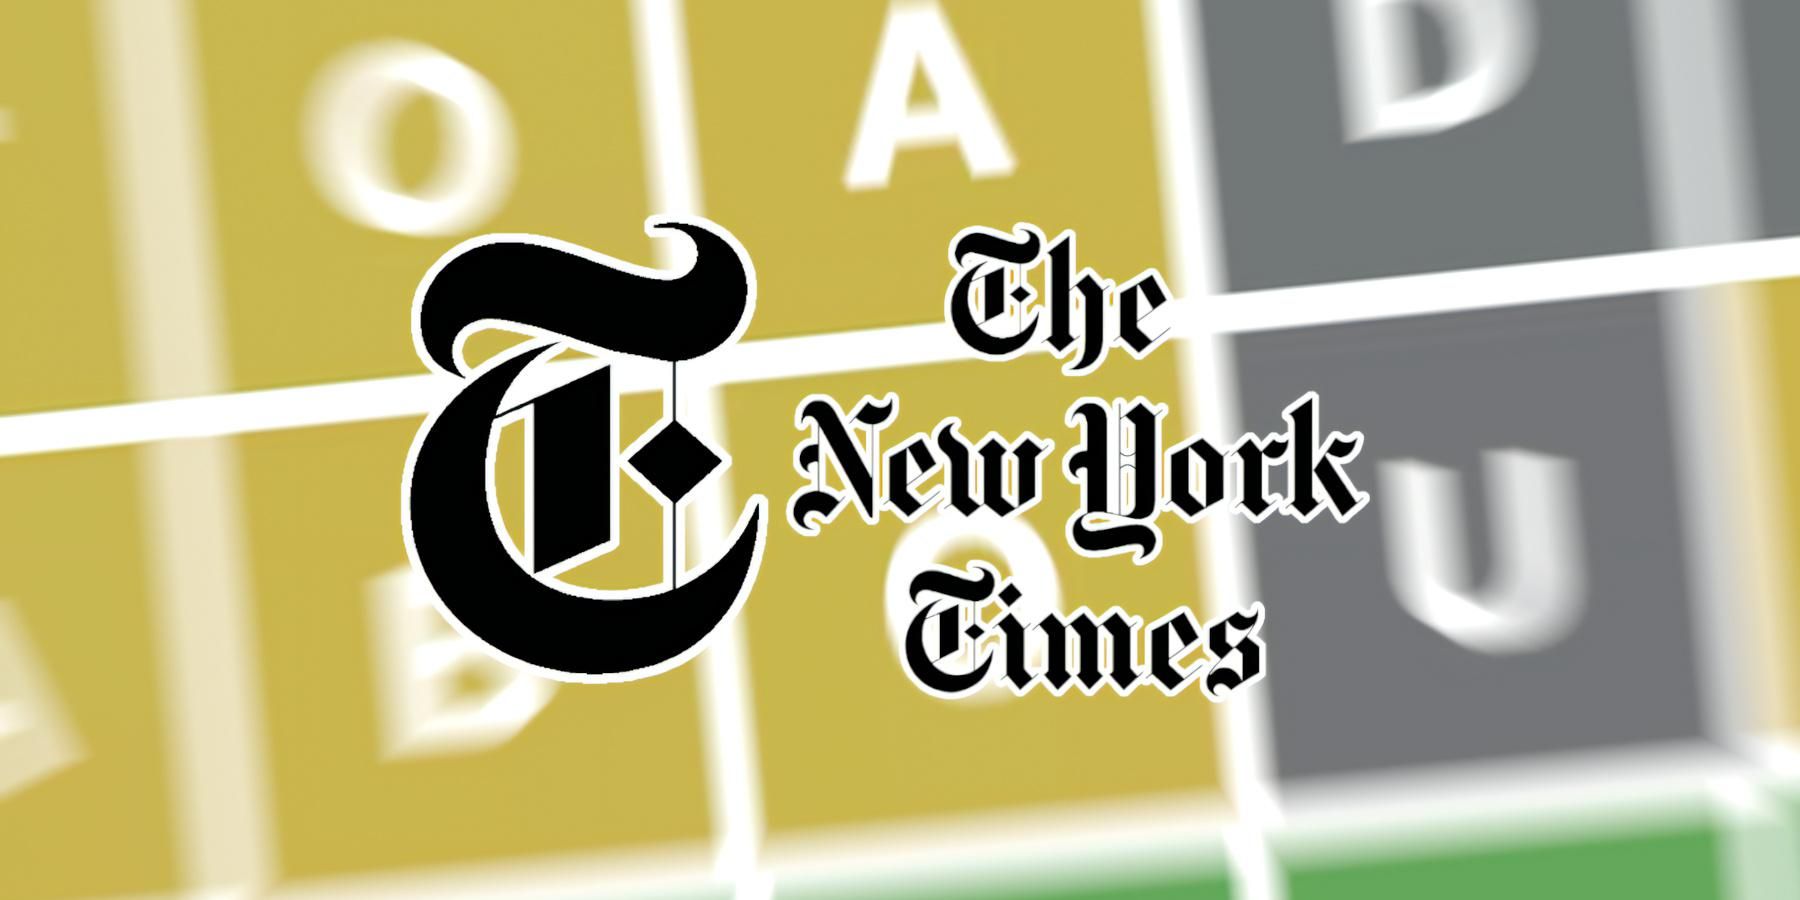 Логотип New York Times над Wordle